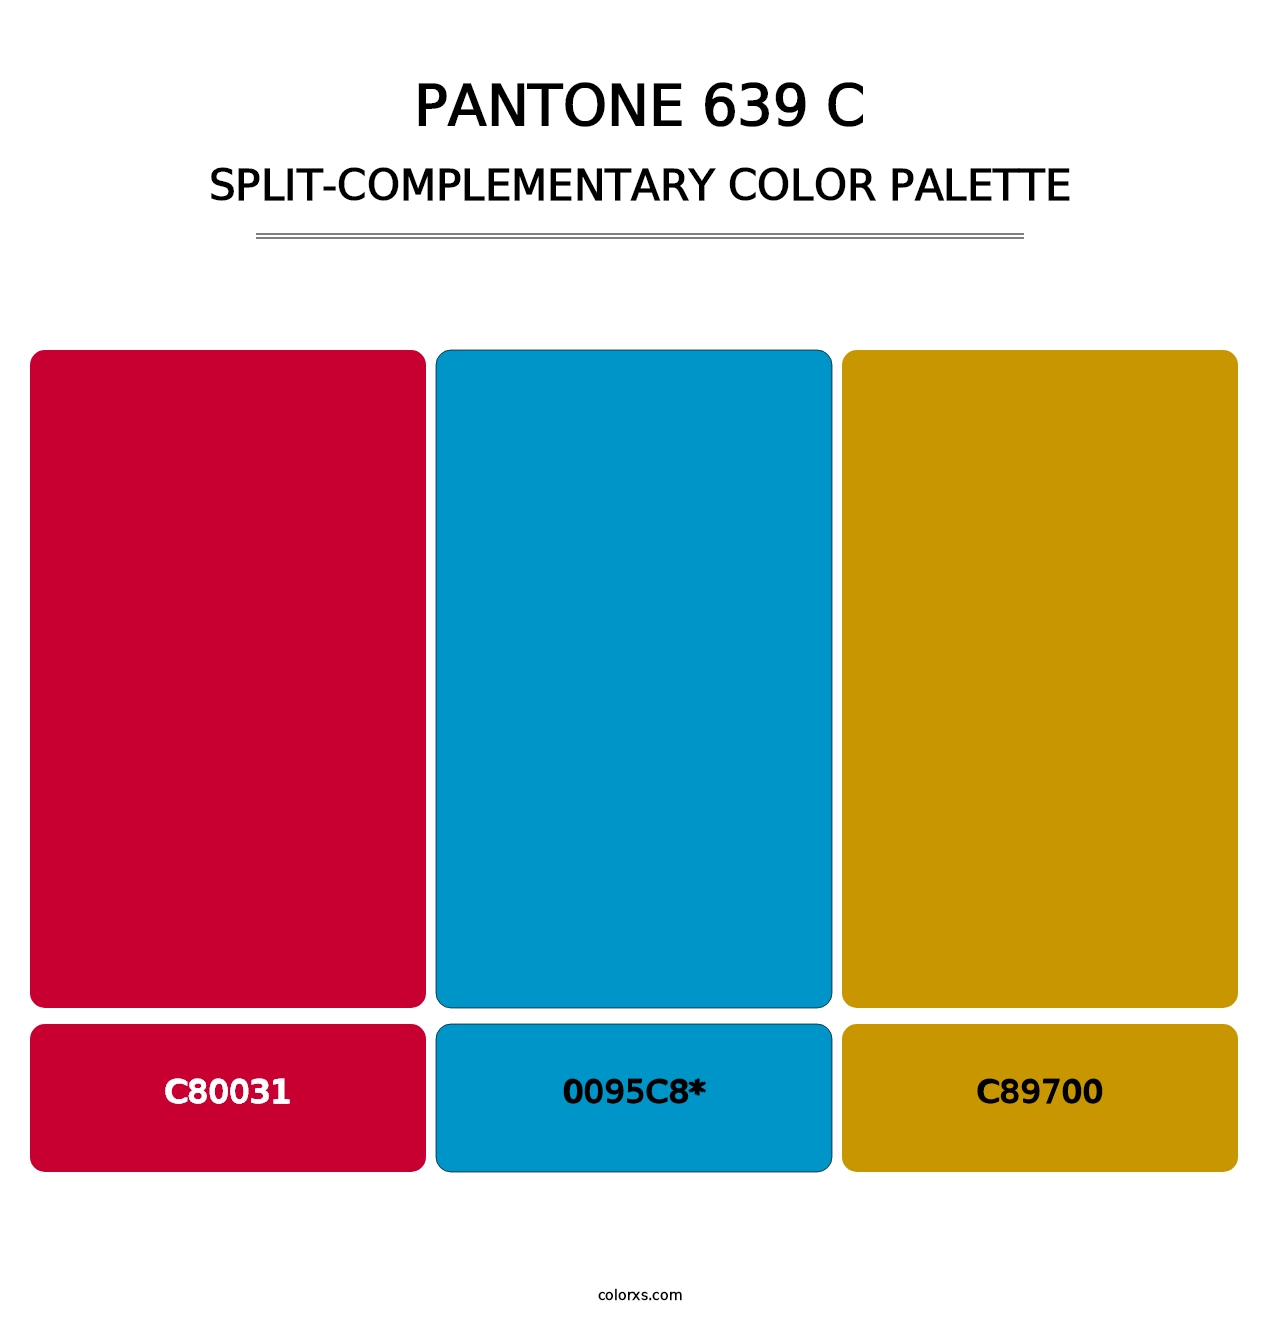 PANTONE 639 C - Split-Complementary Color Palette